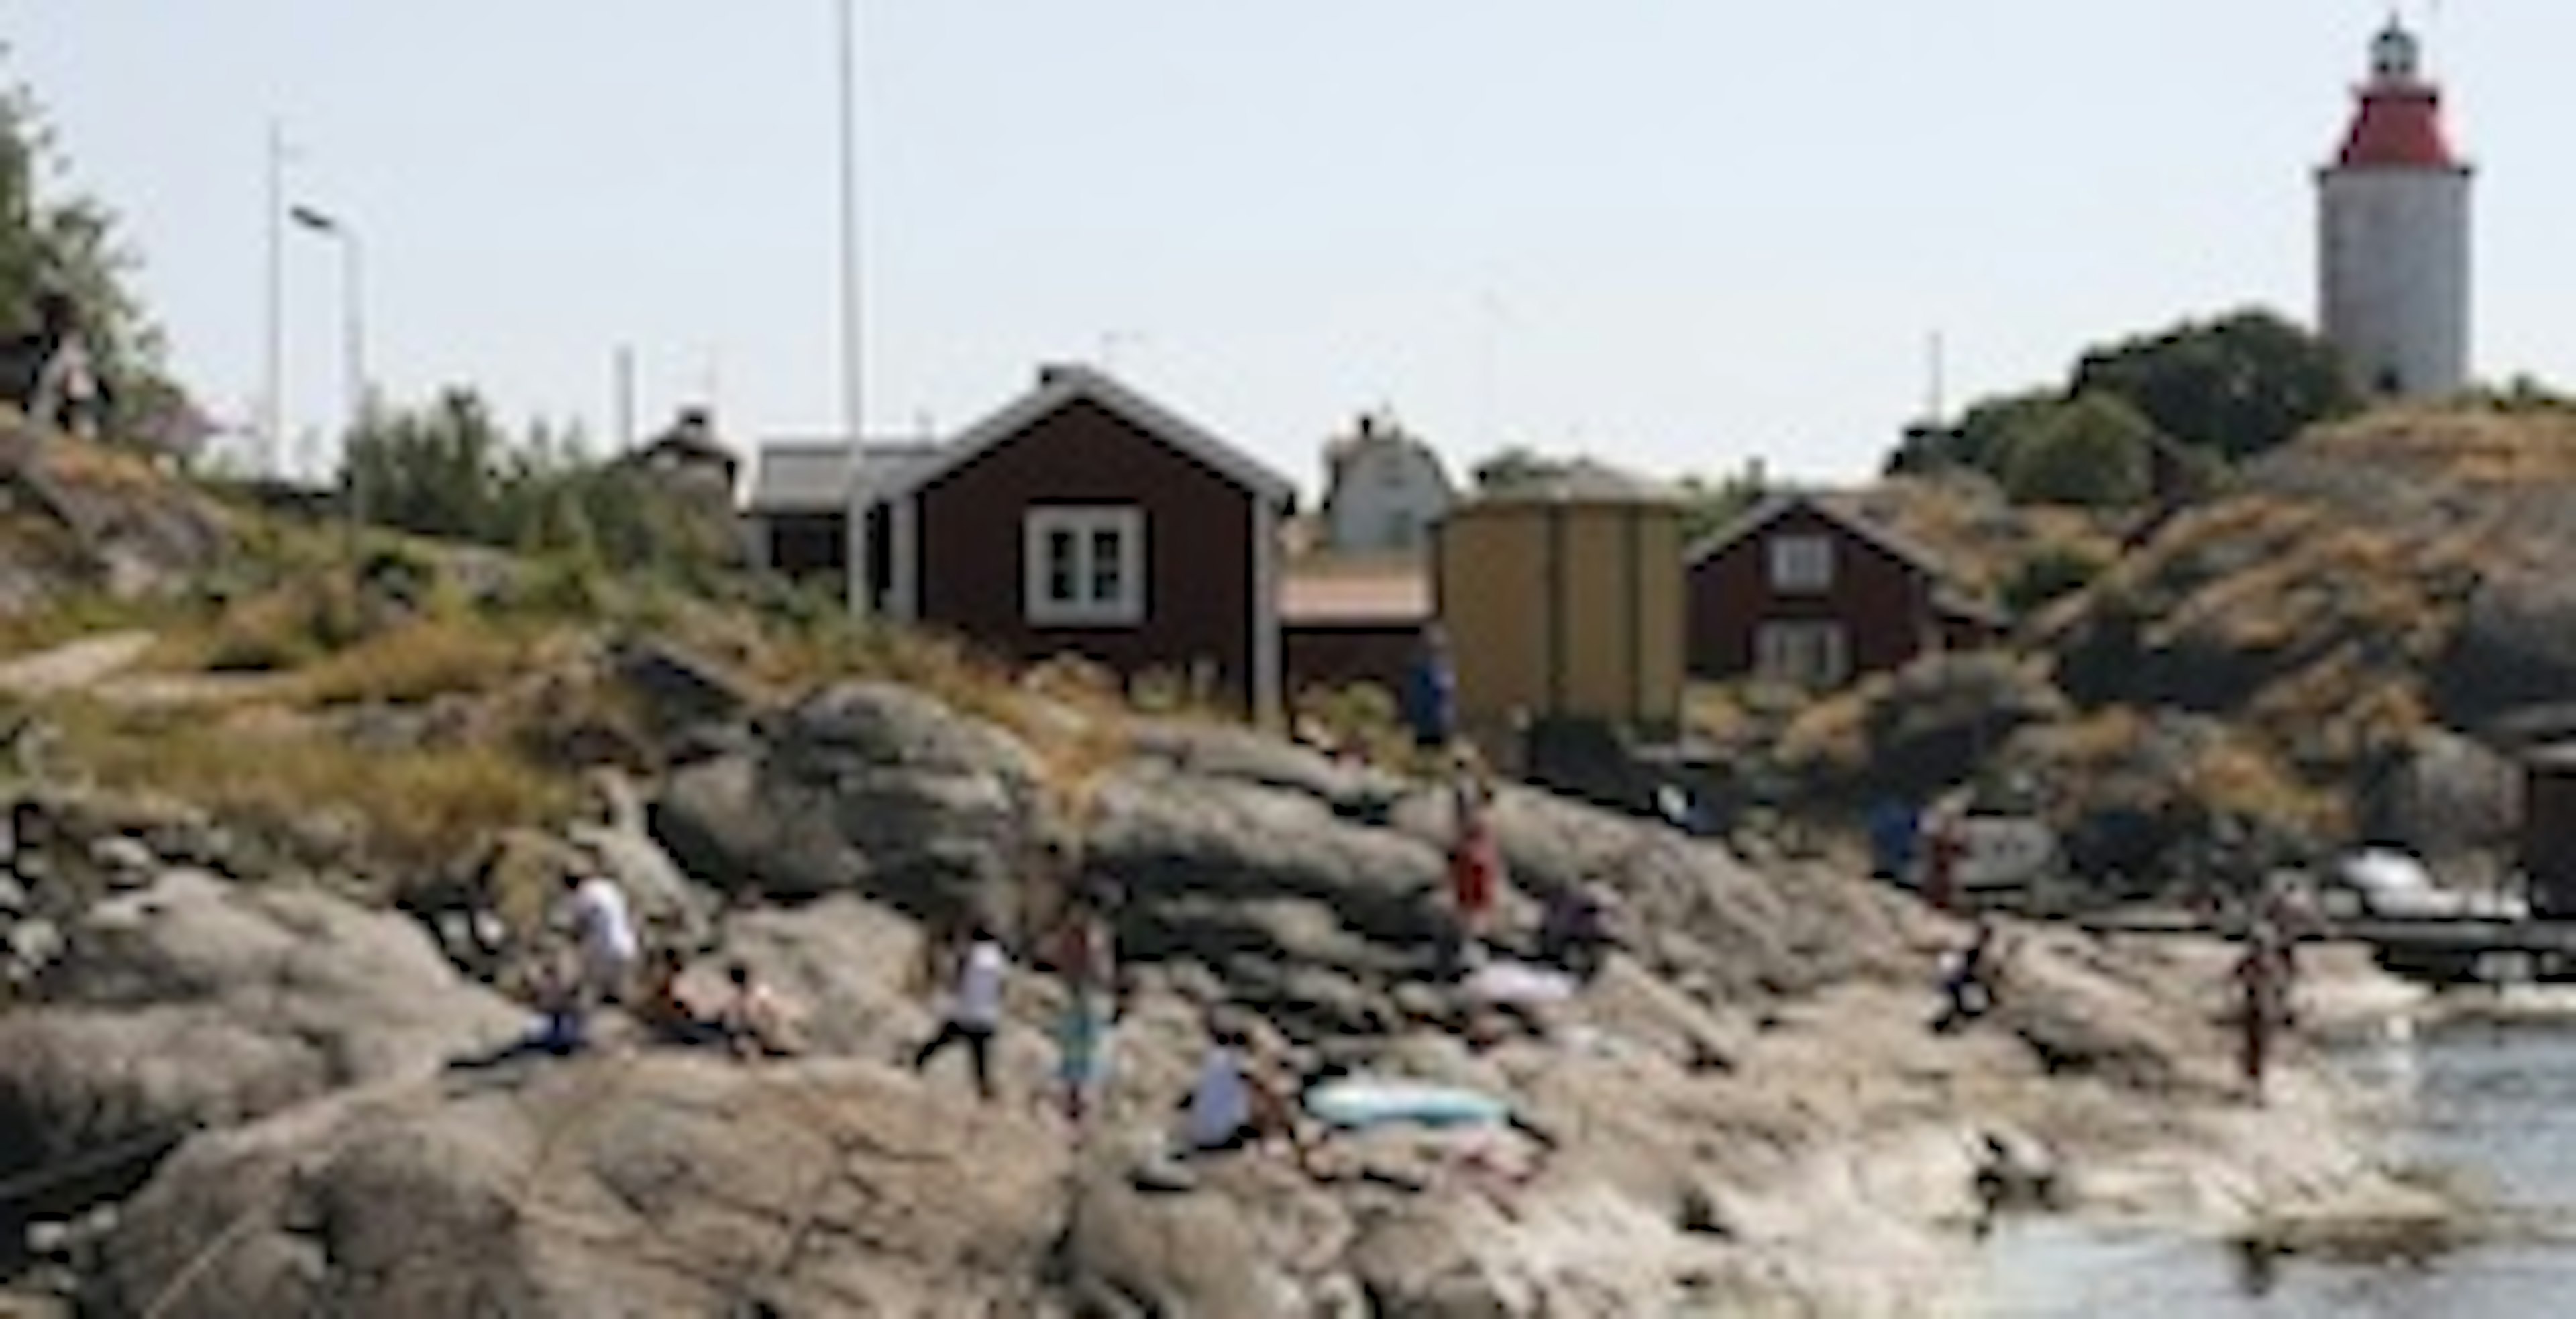 Landsort med Sveriges äldsta fyr renoveras.